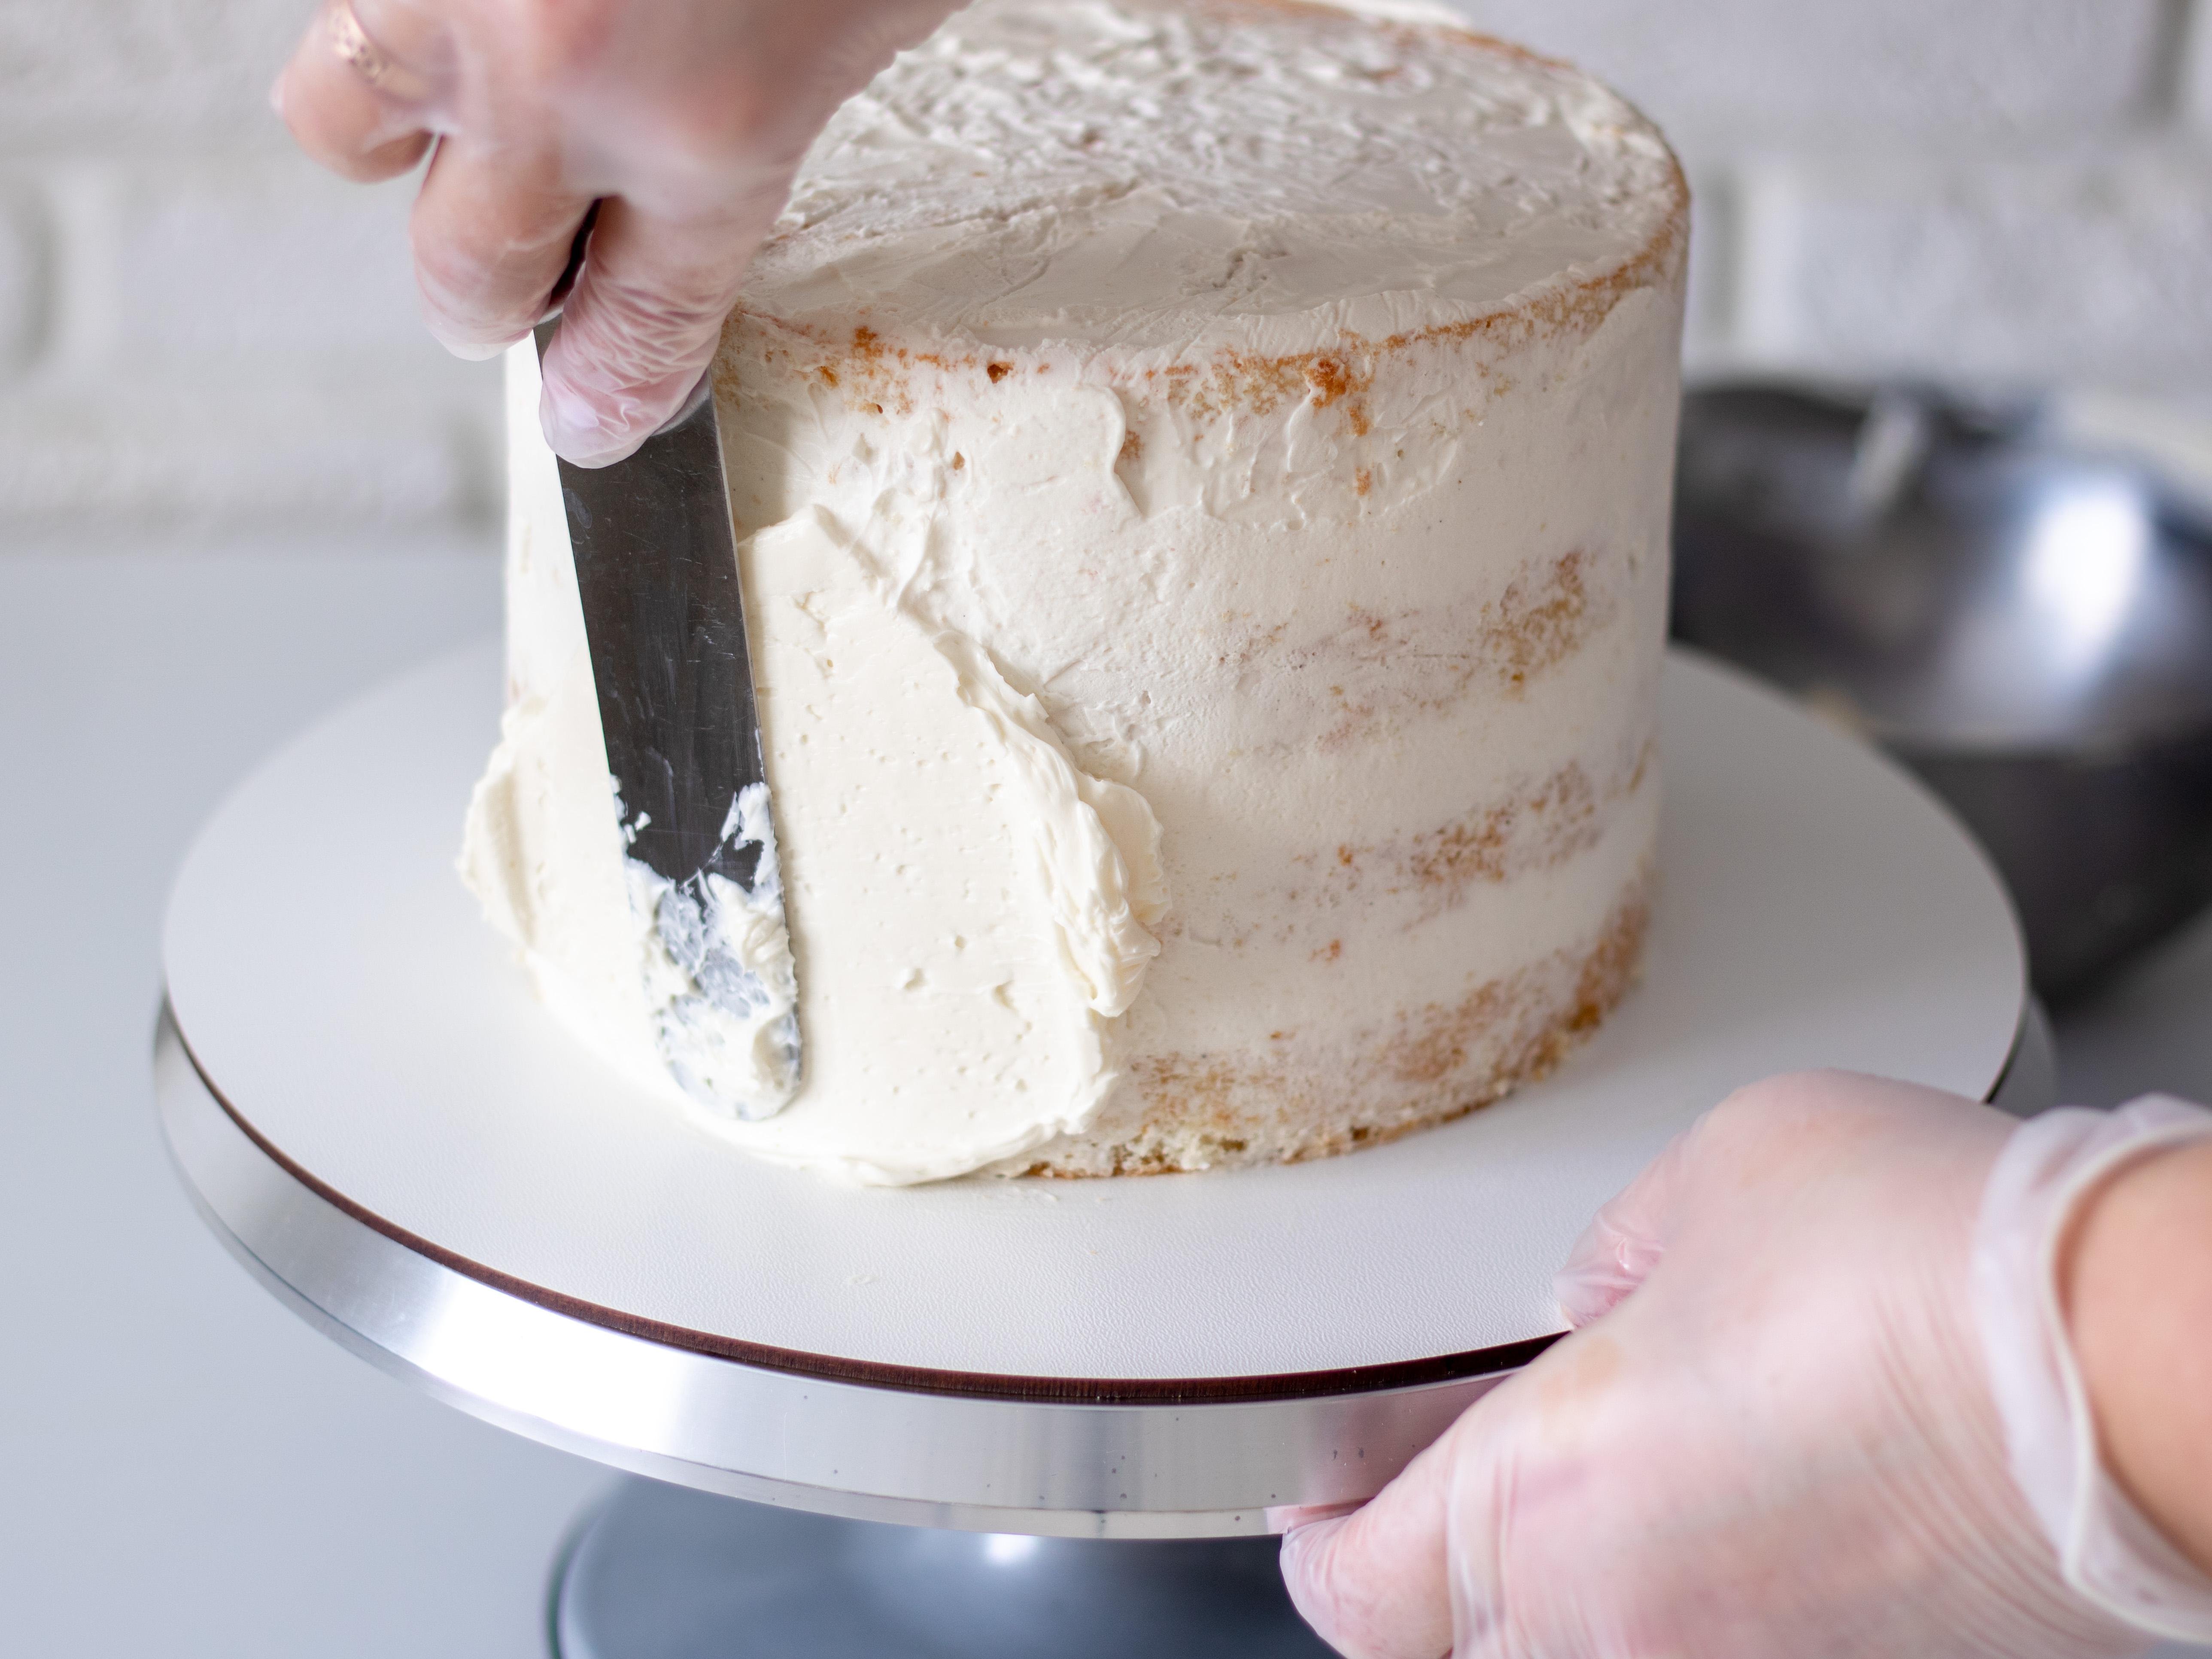 Выравнивание и украшение торта кремом чиз. Крем-чиз для торта. Выровнять торт кремом чиз. Крем для выравние торта. Выравниватель крема на торте.